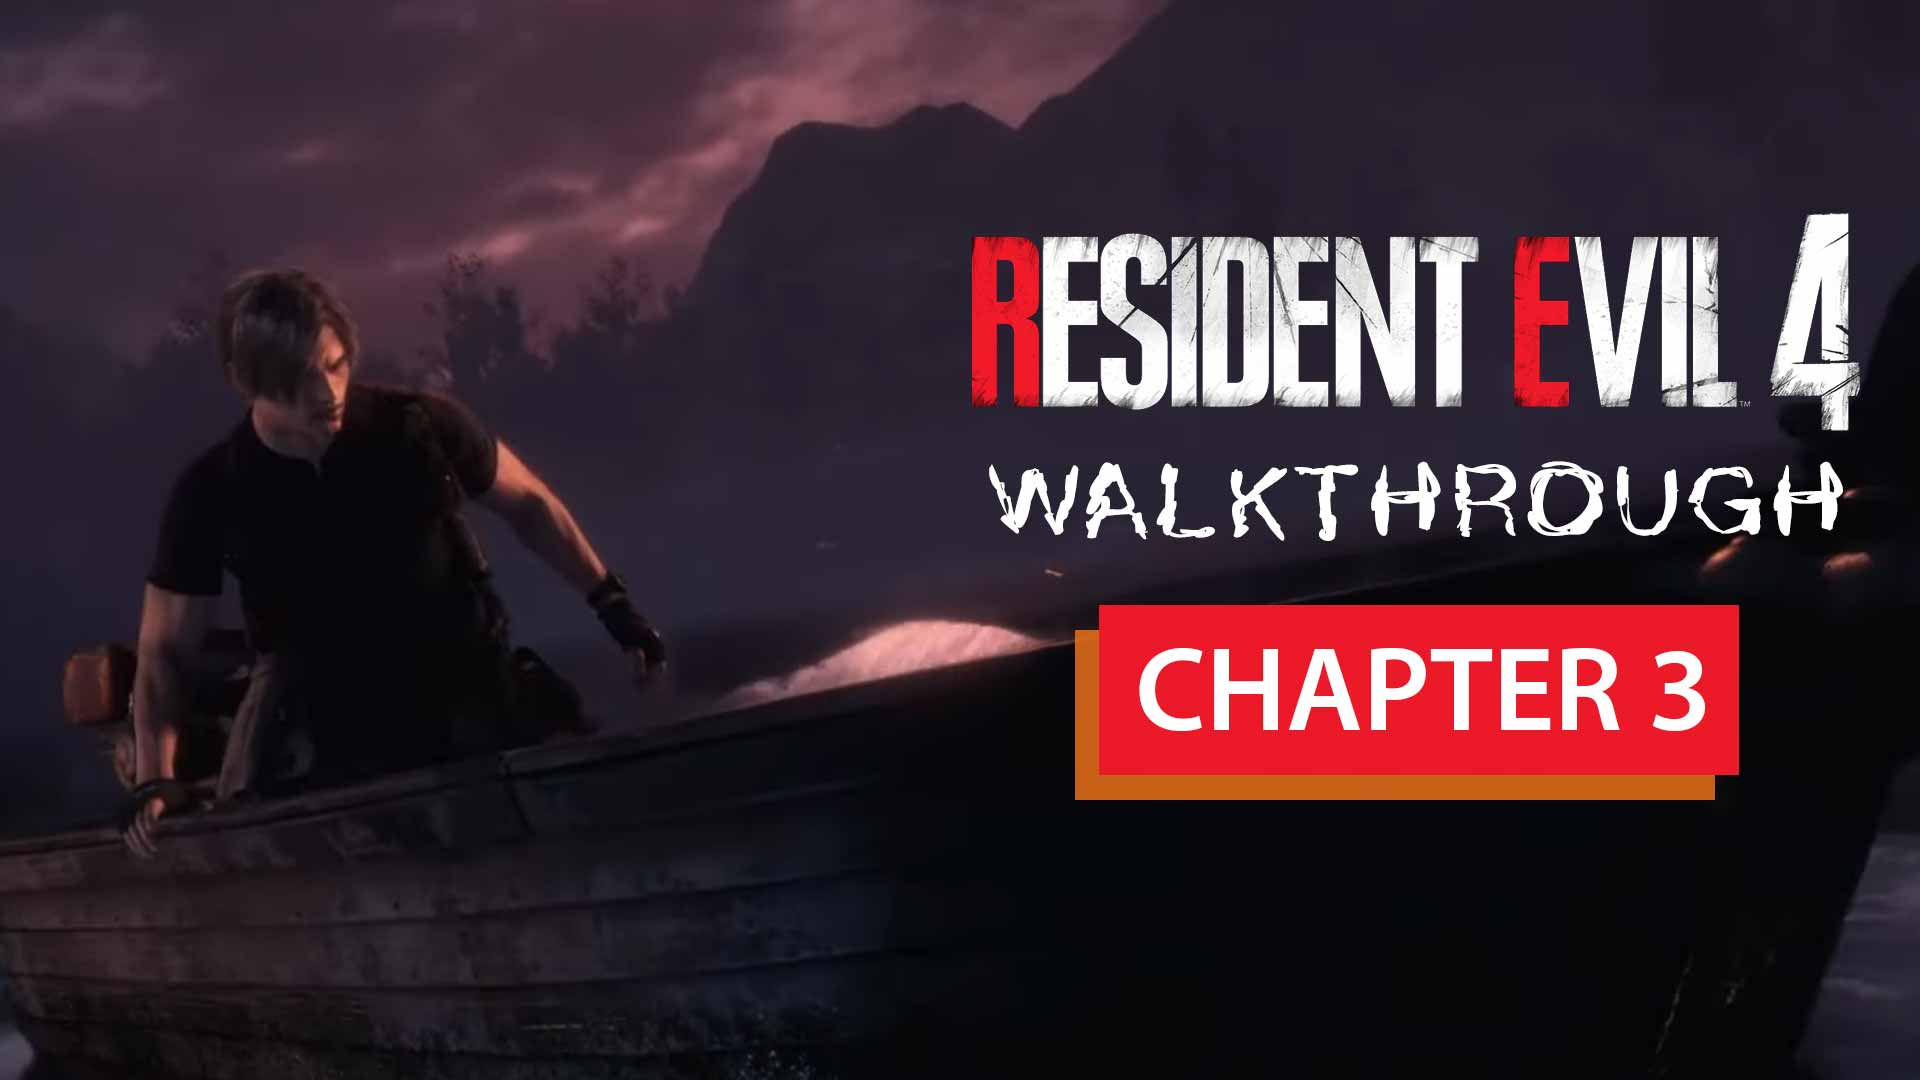 Resident Evil 4 Remake Chapter 8 Walkthrough